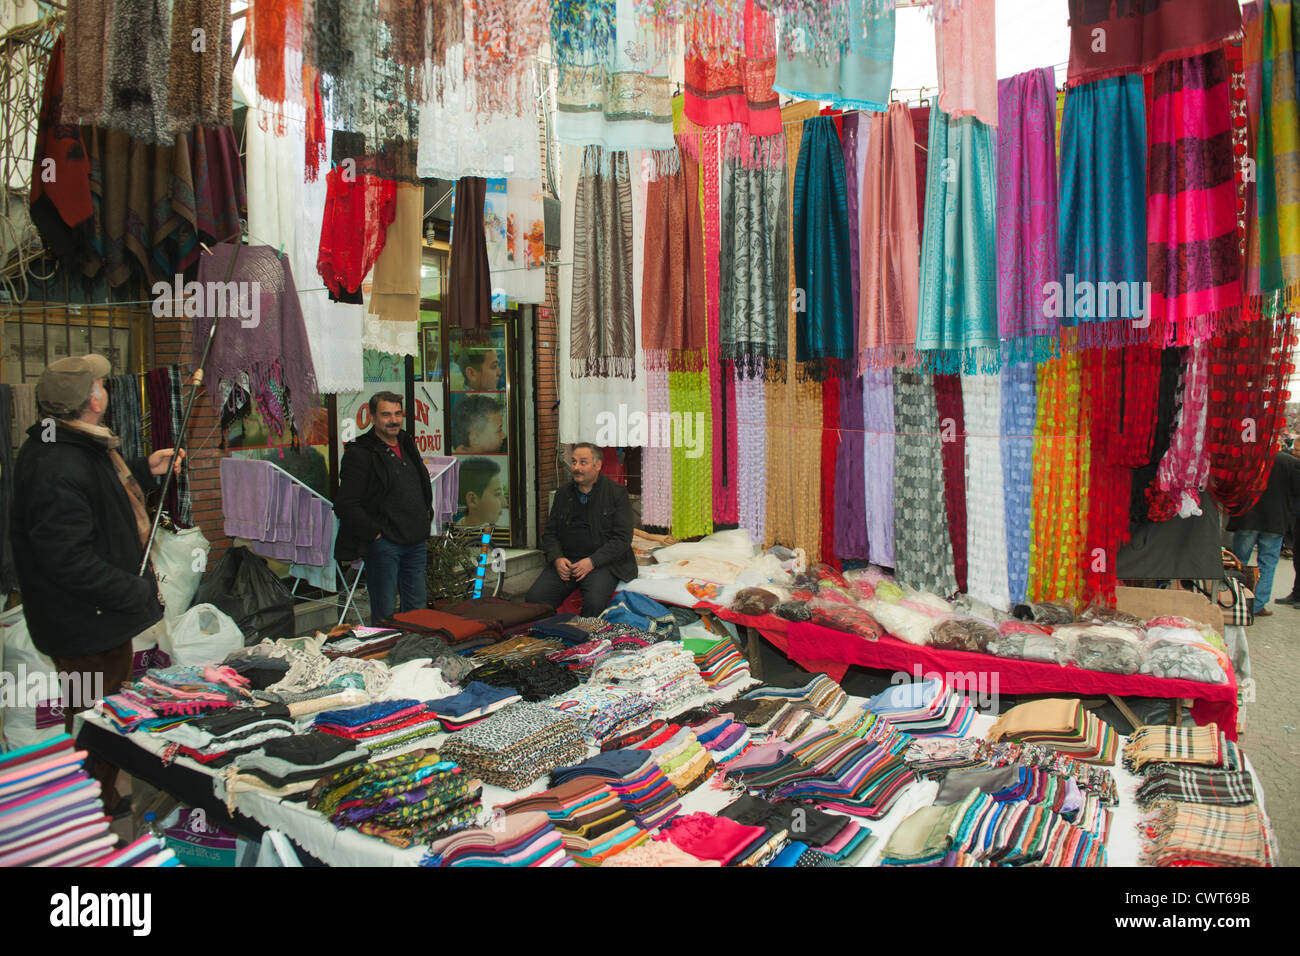 Türkei, Istanbul, Fatih, Carsamba Pazari oder Frauenmarkt, jeden Mittwoch an der Fatih-Moschee. Foto Stock